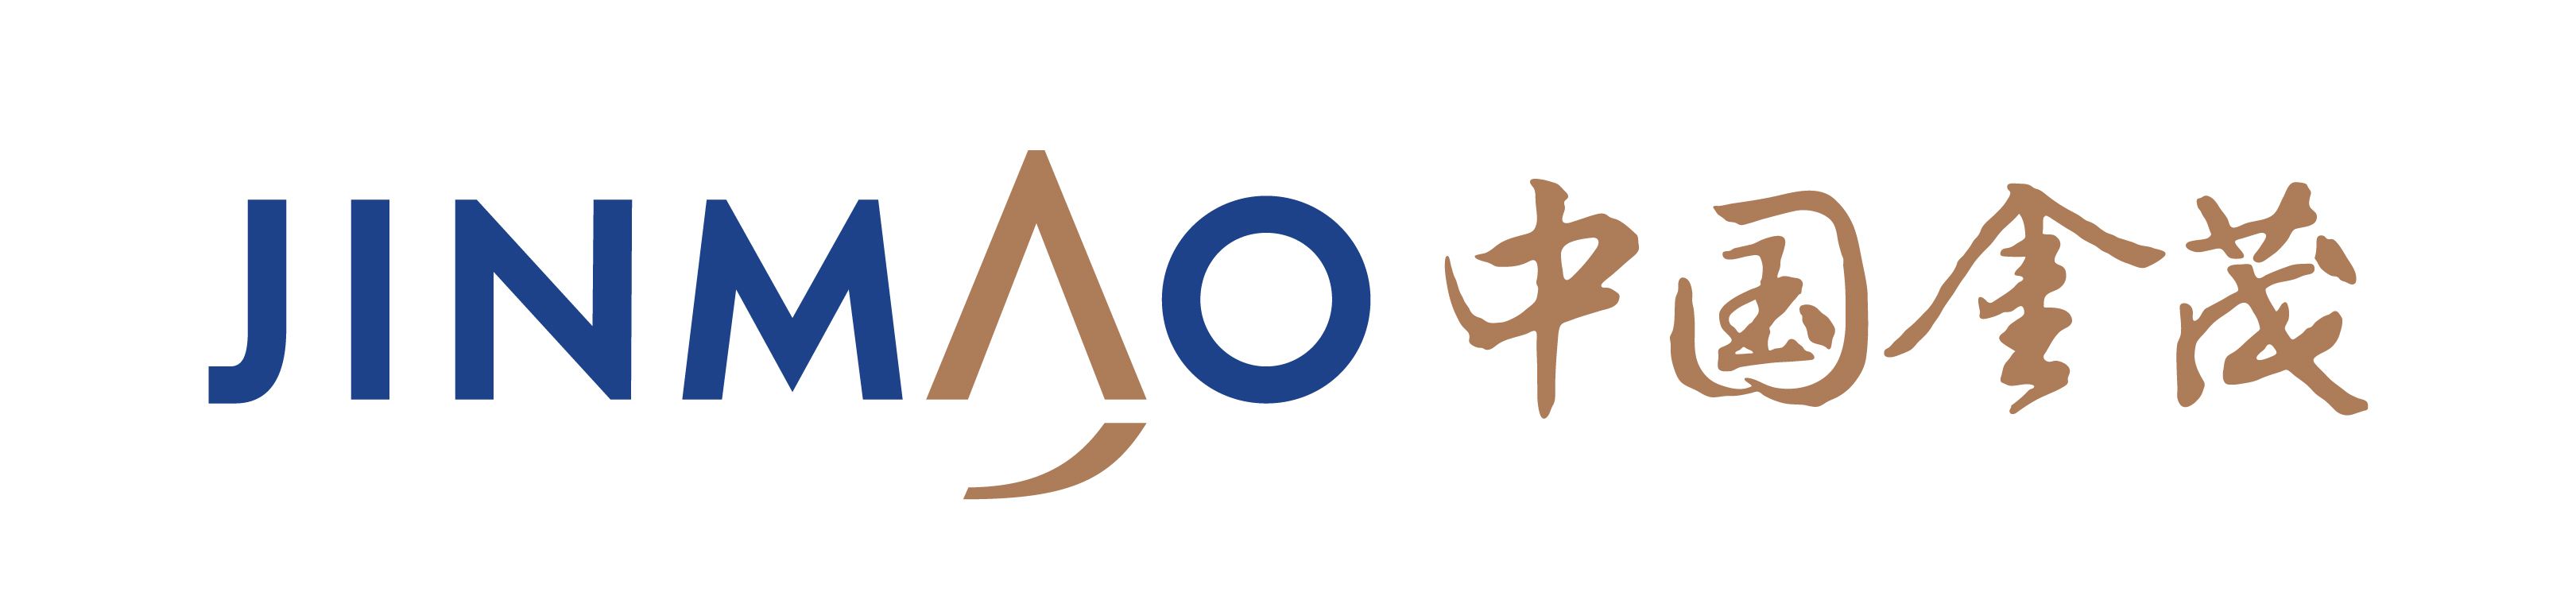 中國金茂logo